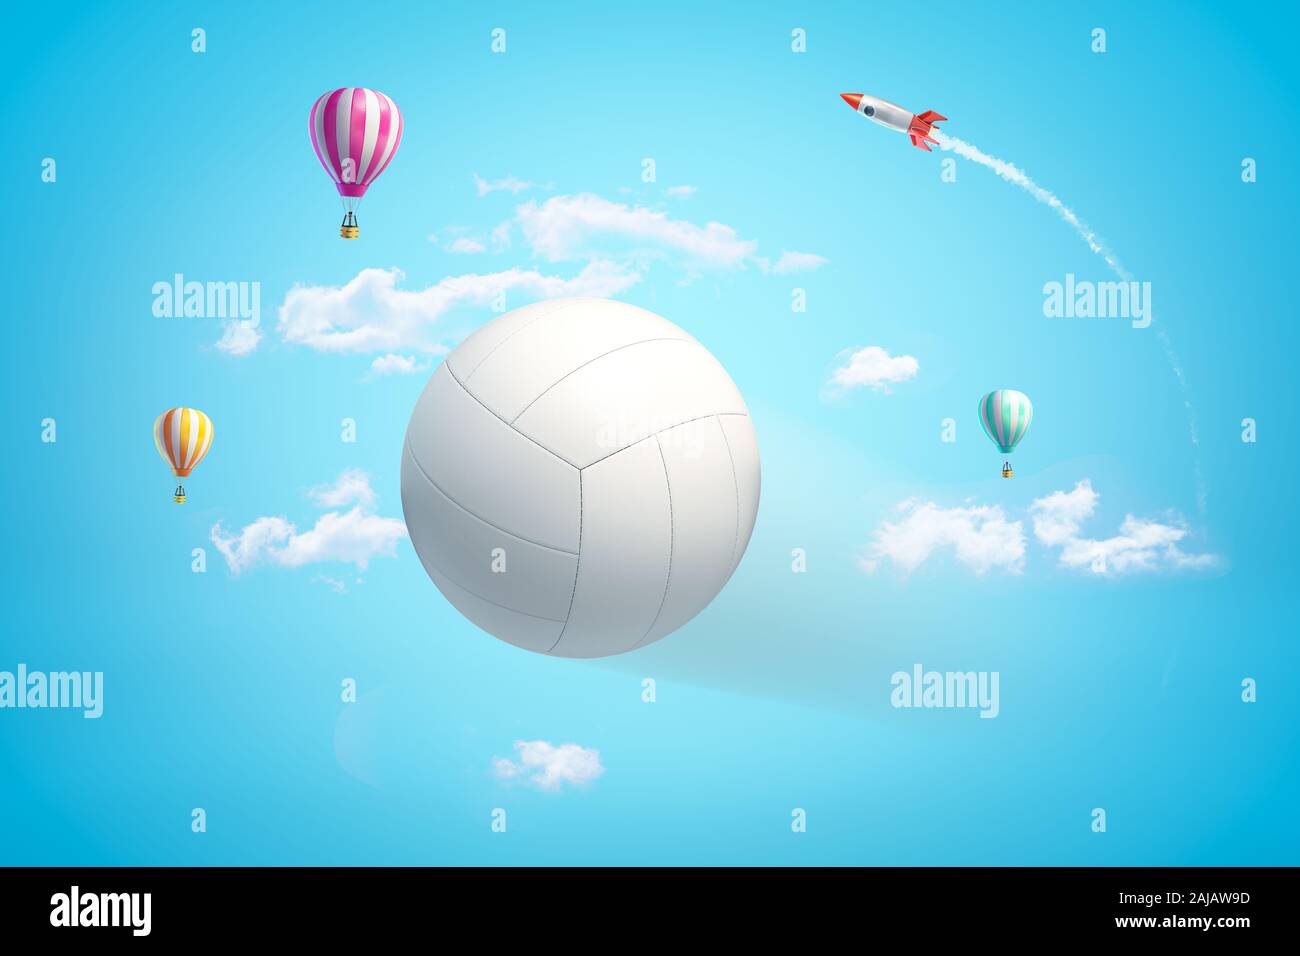 3D rendering cerca de voleibol de blanco en el aire contra el cielo azul brillante con cohetes y globos de aire caliente en la distancia. La actividad física. Juegos activos Foto de stock